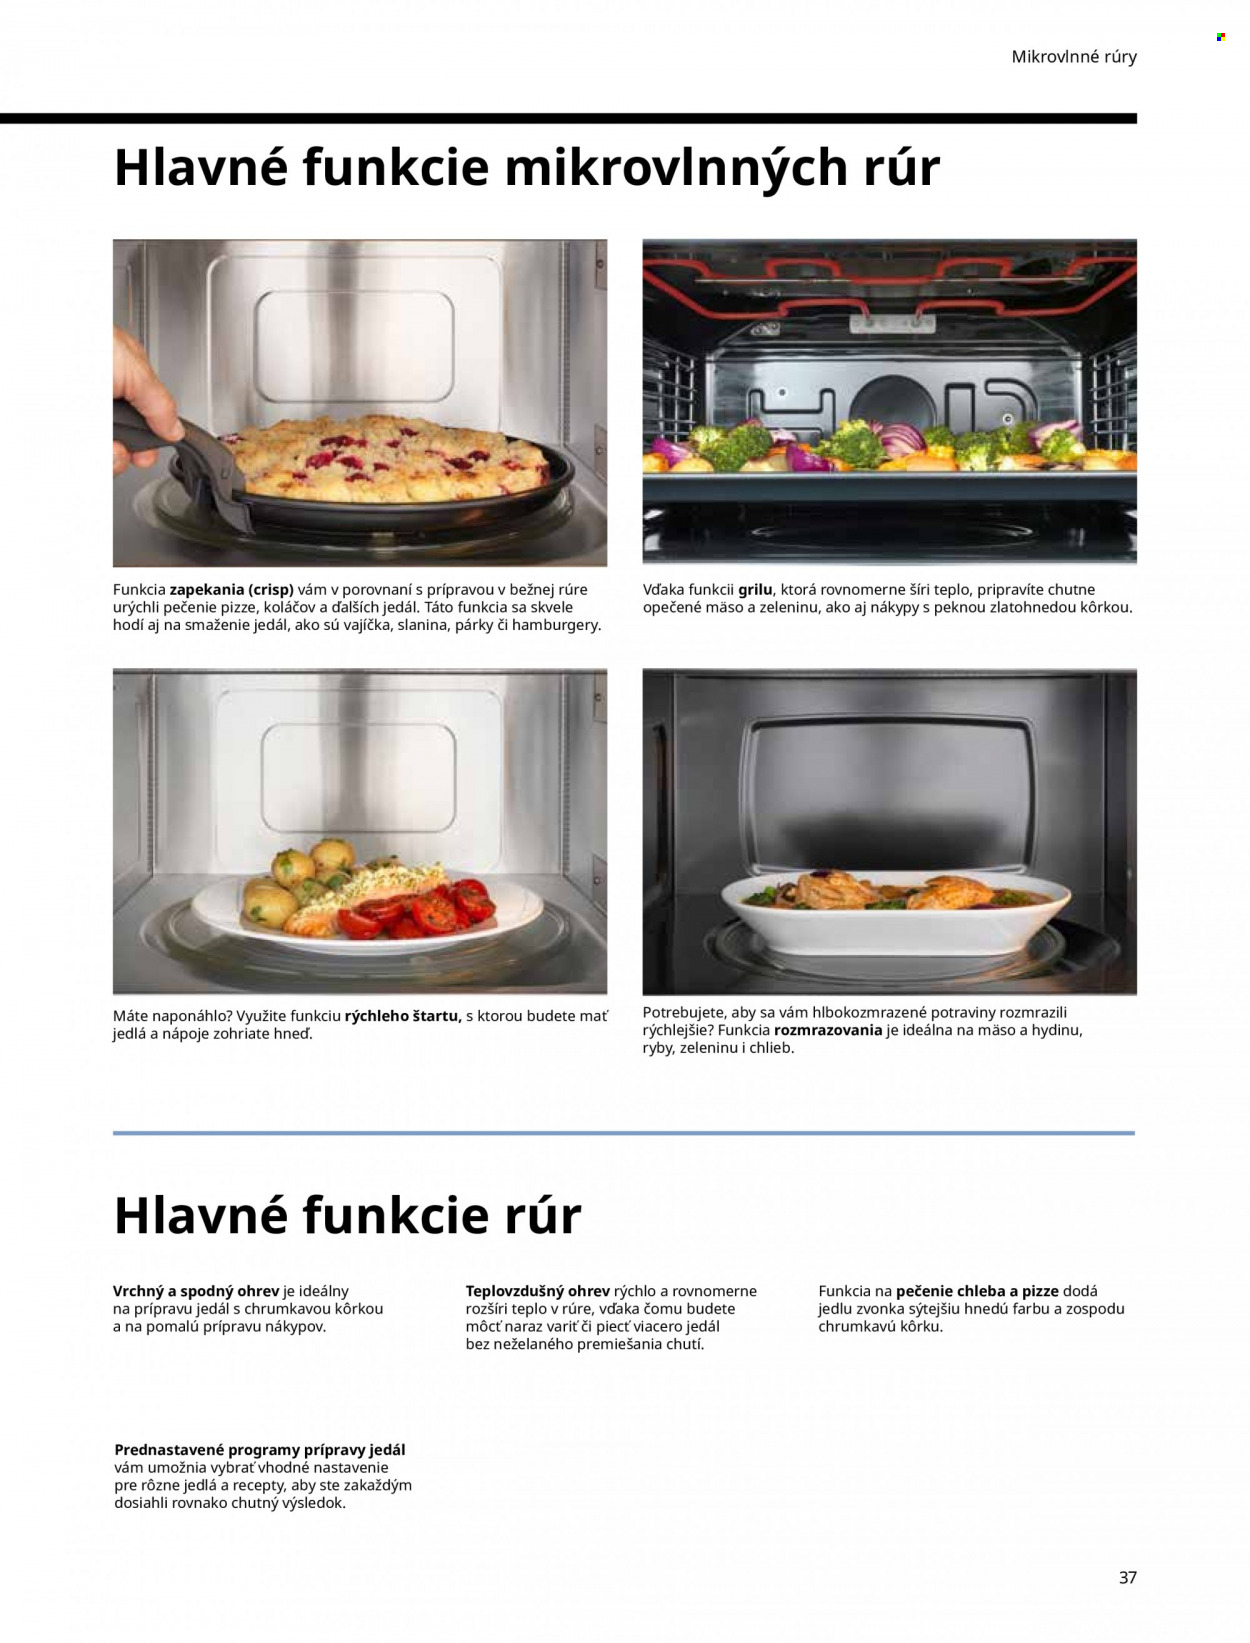 Leták IKEA - Produkty v akcii - mikrovlnná rúra. Strana 37.